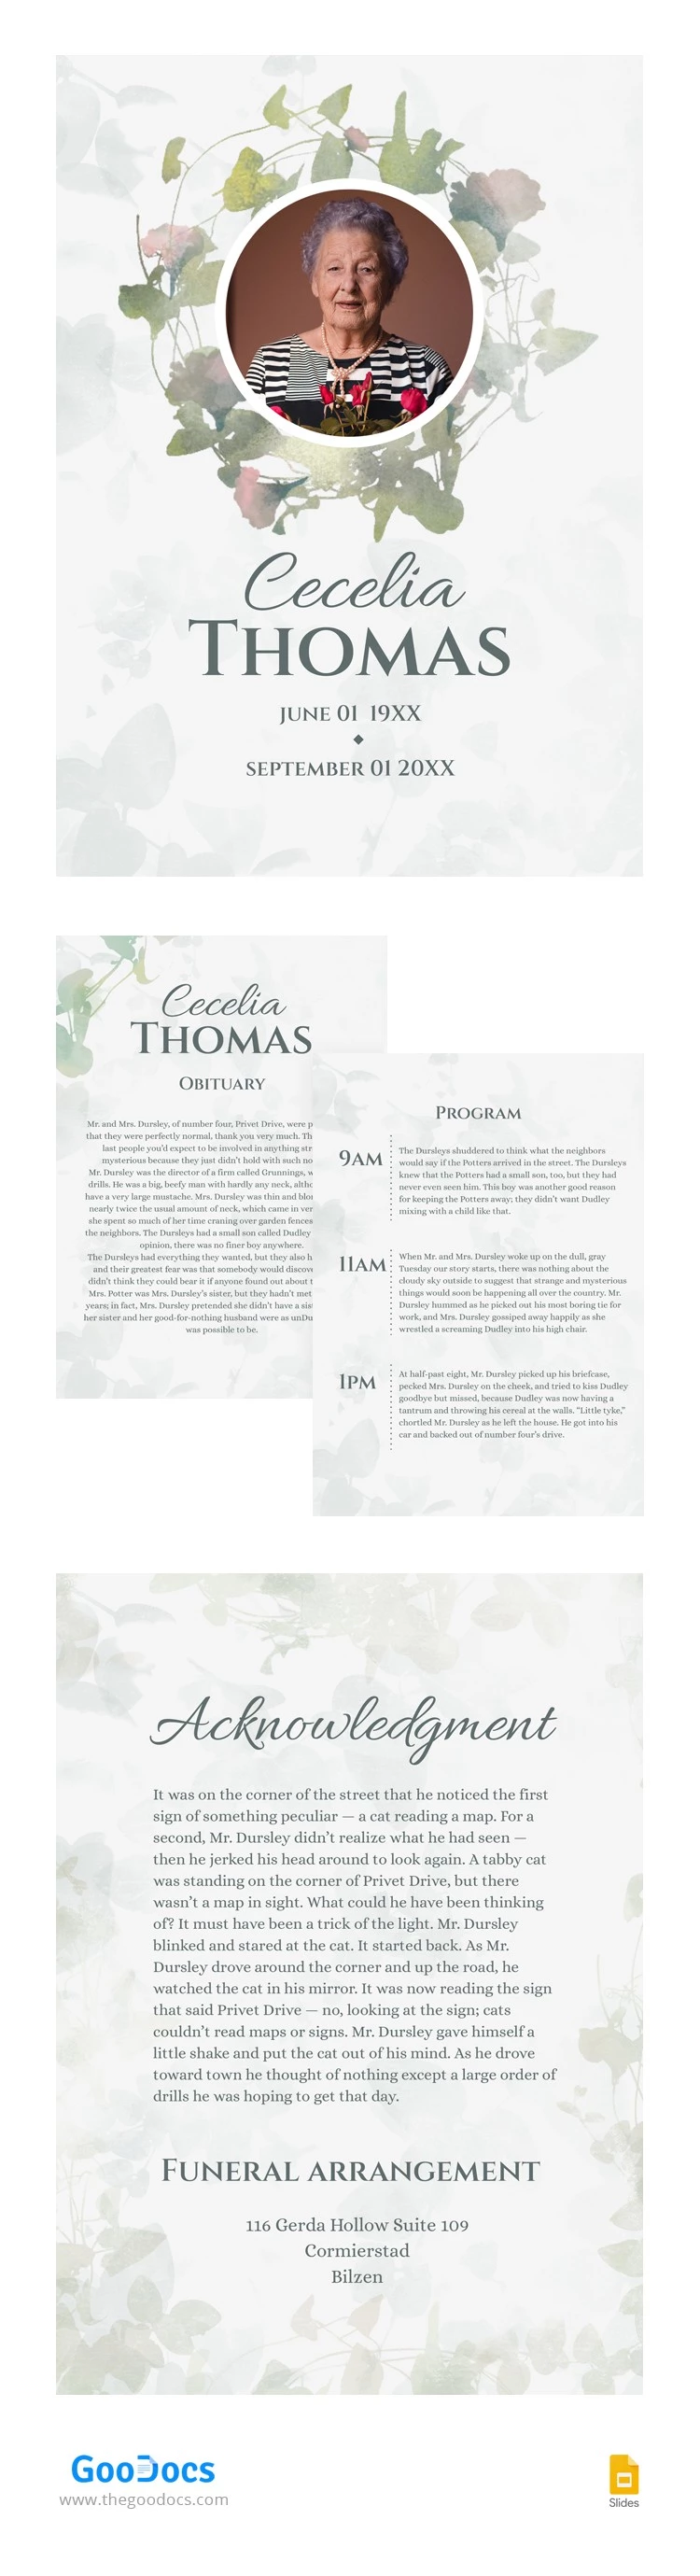 Programme funéraire floral - free Google Docs Template - 10062860